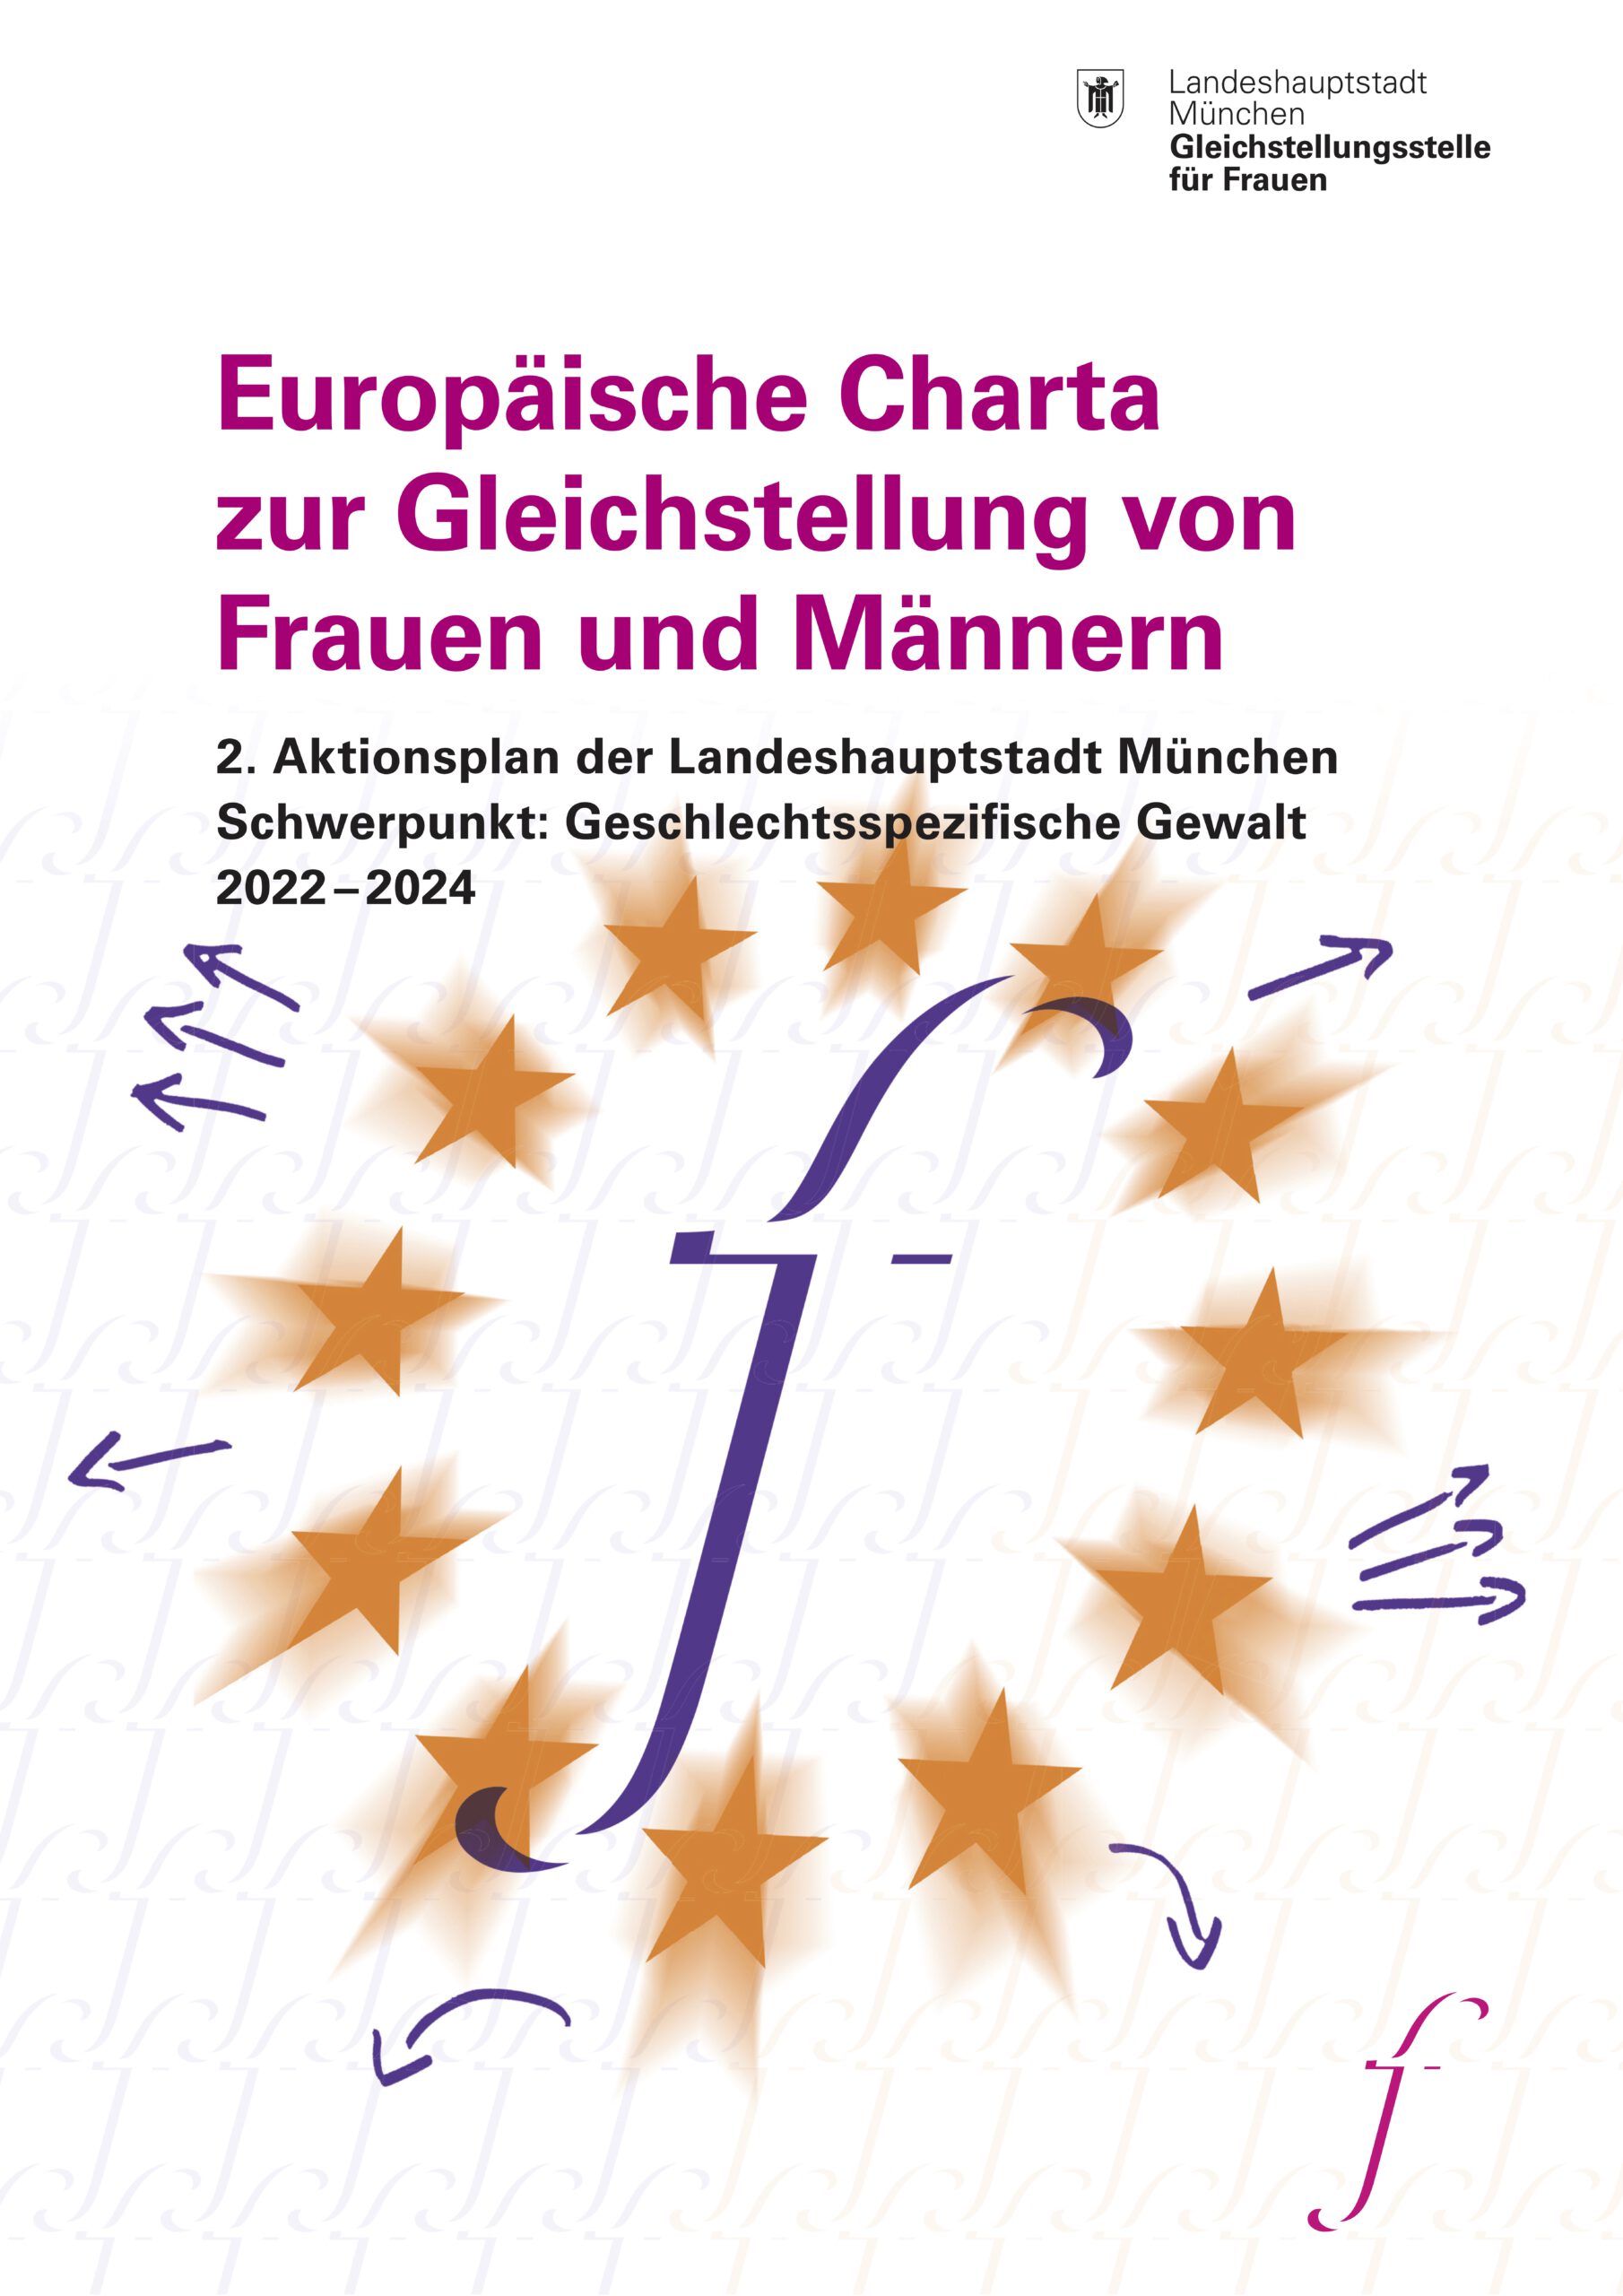 Europäische Charta zur Gleichstellung von Frauen und Männern 2. Aktionsplan der Landeshauptstadt München Schwerpunkt: Geschlechtsspezifische Gewalt 2022-2024